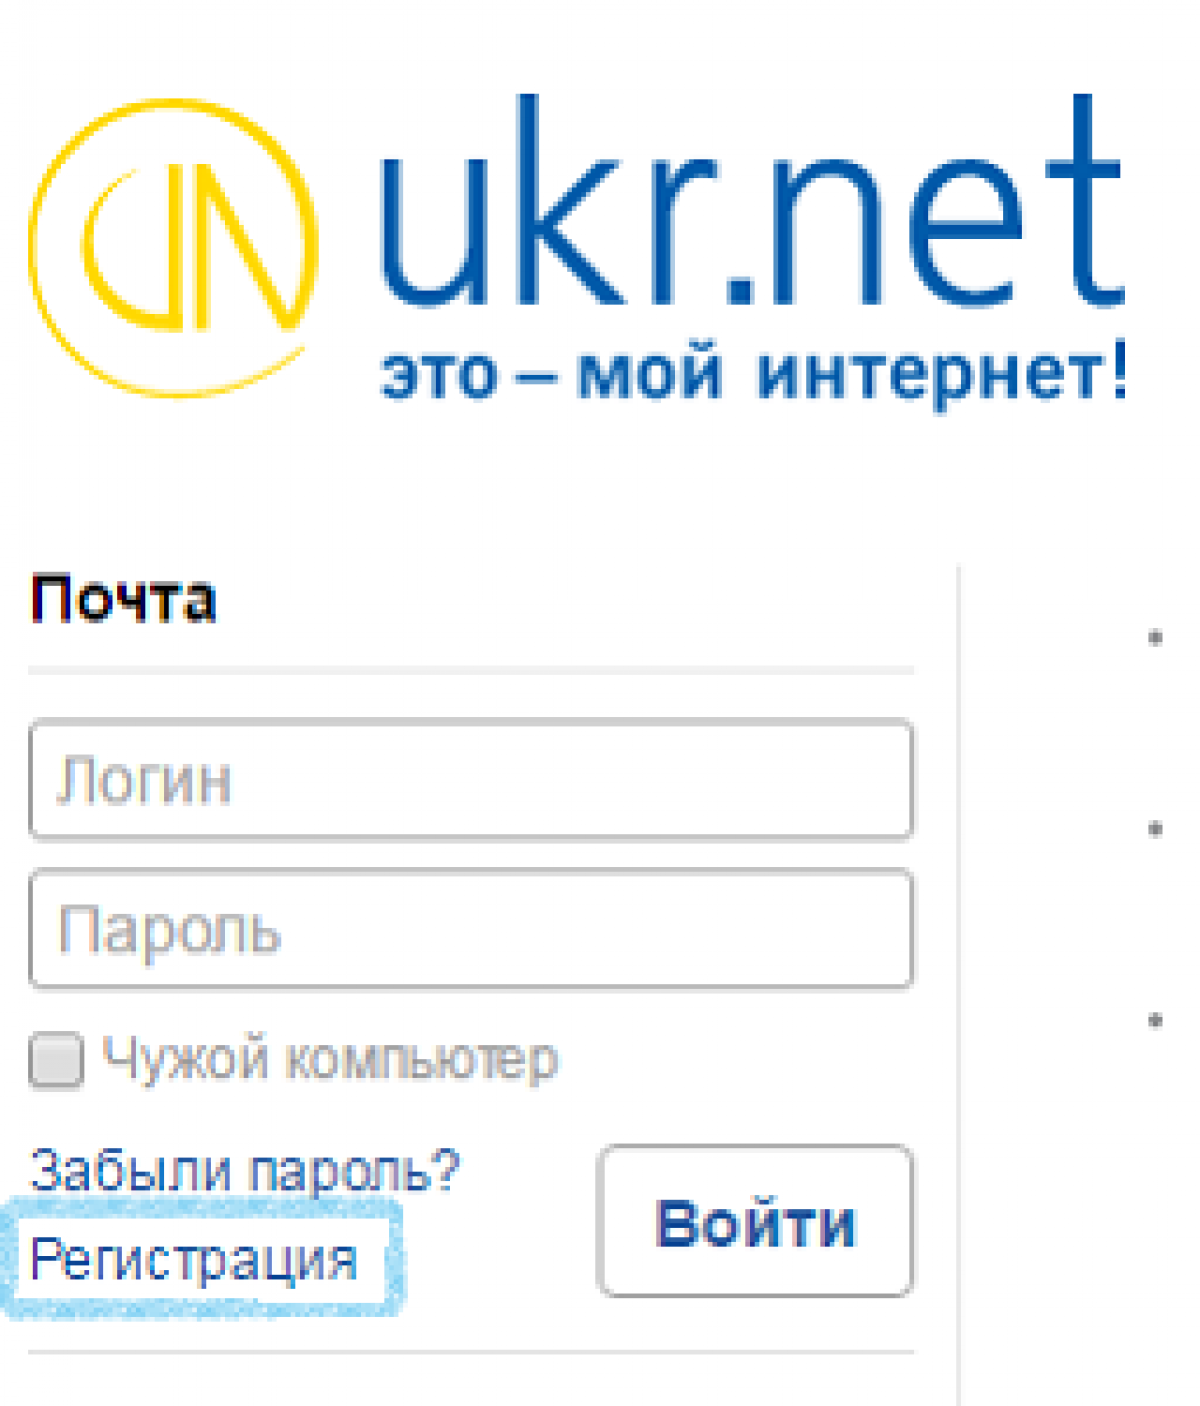 Укр нет. Ukr.net почта. Укрнет. Почта укр нет. Электронная почта укрнет.